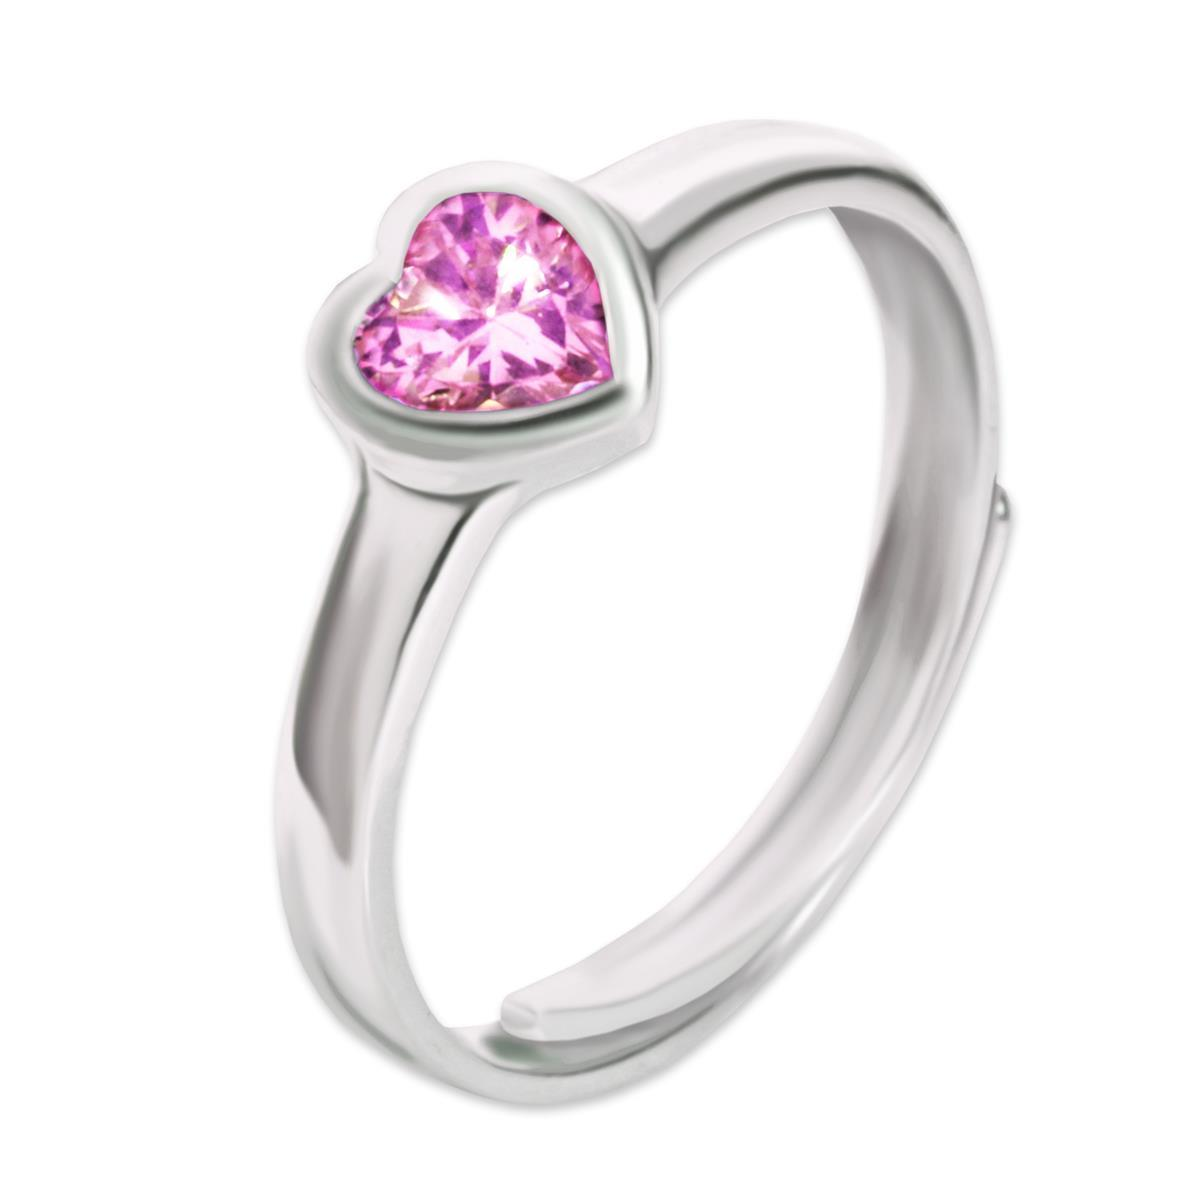 Mädchen Ring mit Zirkonia Herz pink rosa Echt Silber 925 einstellbare Größe